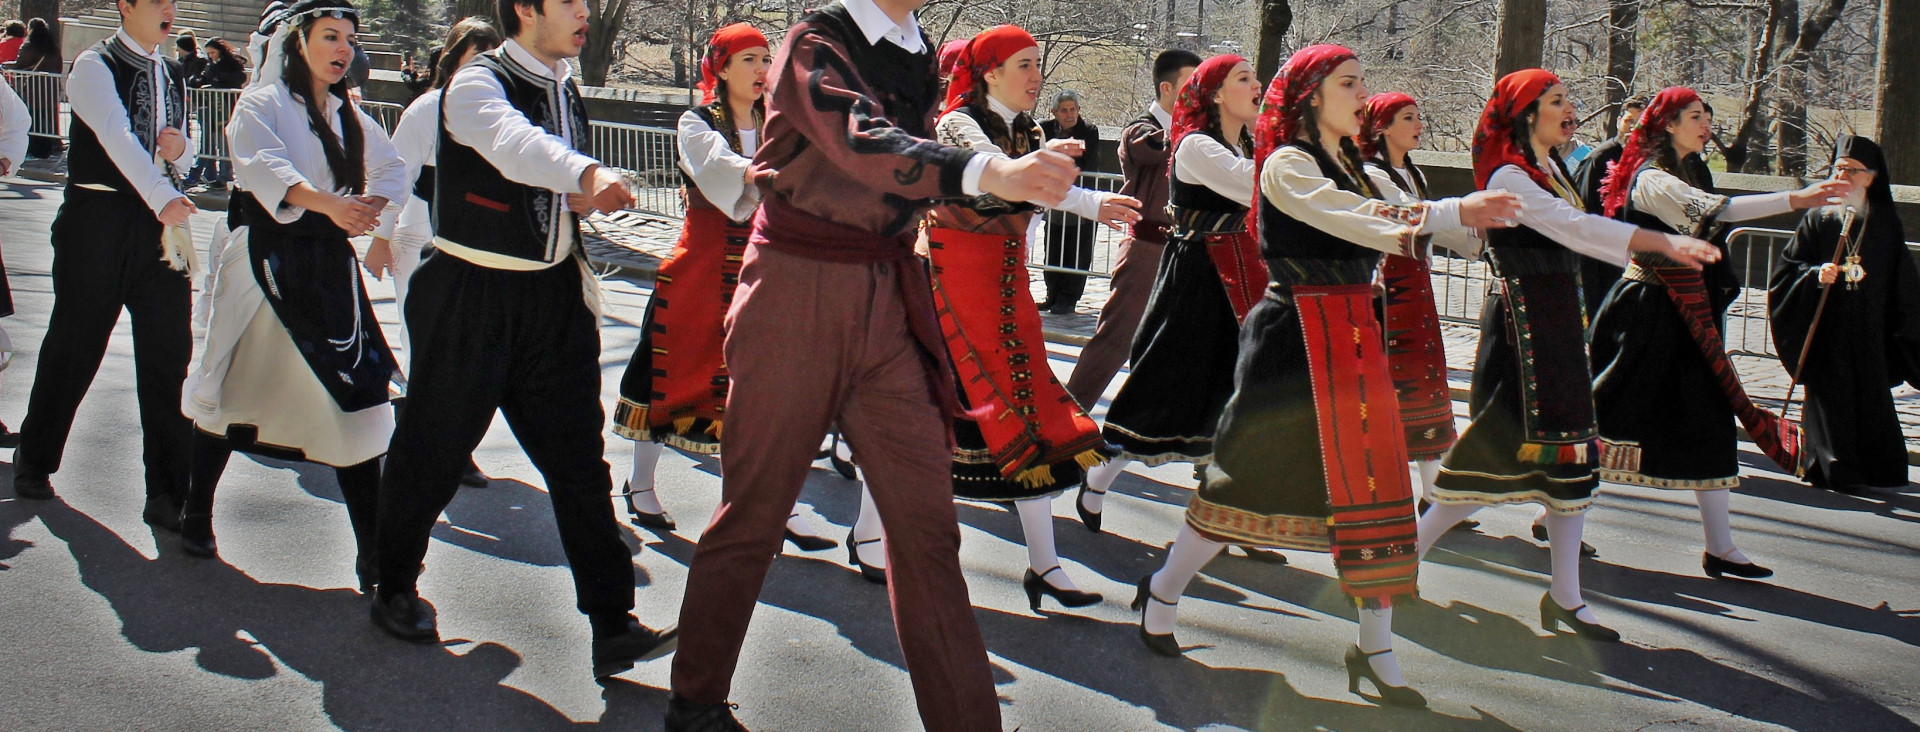 ΧοροΠαραδοσιακά · Παρέλαση στην Νέα Υόρκη